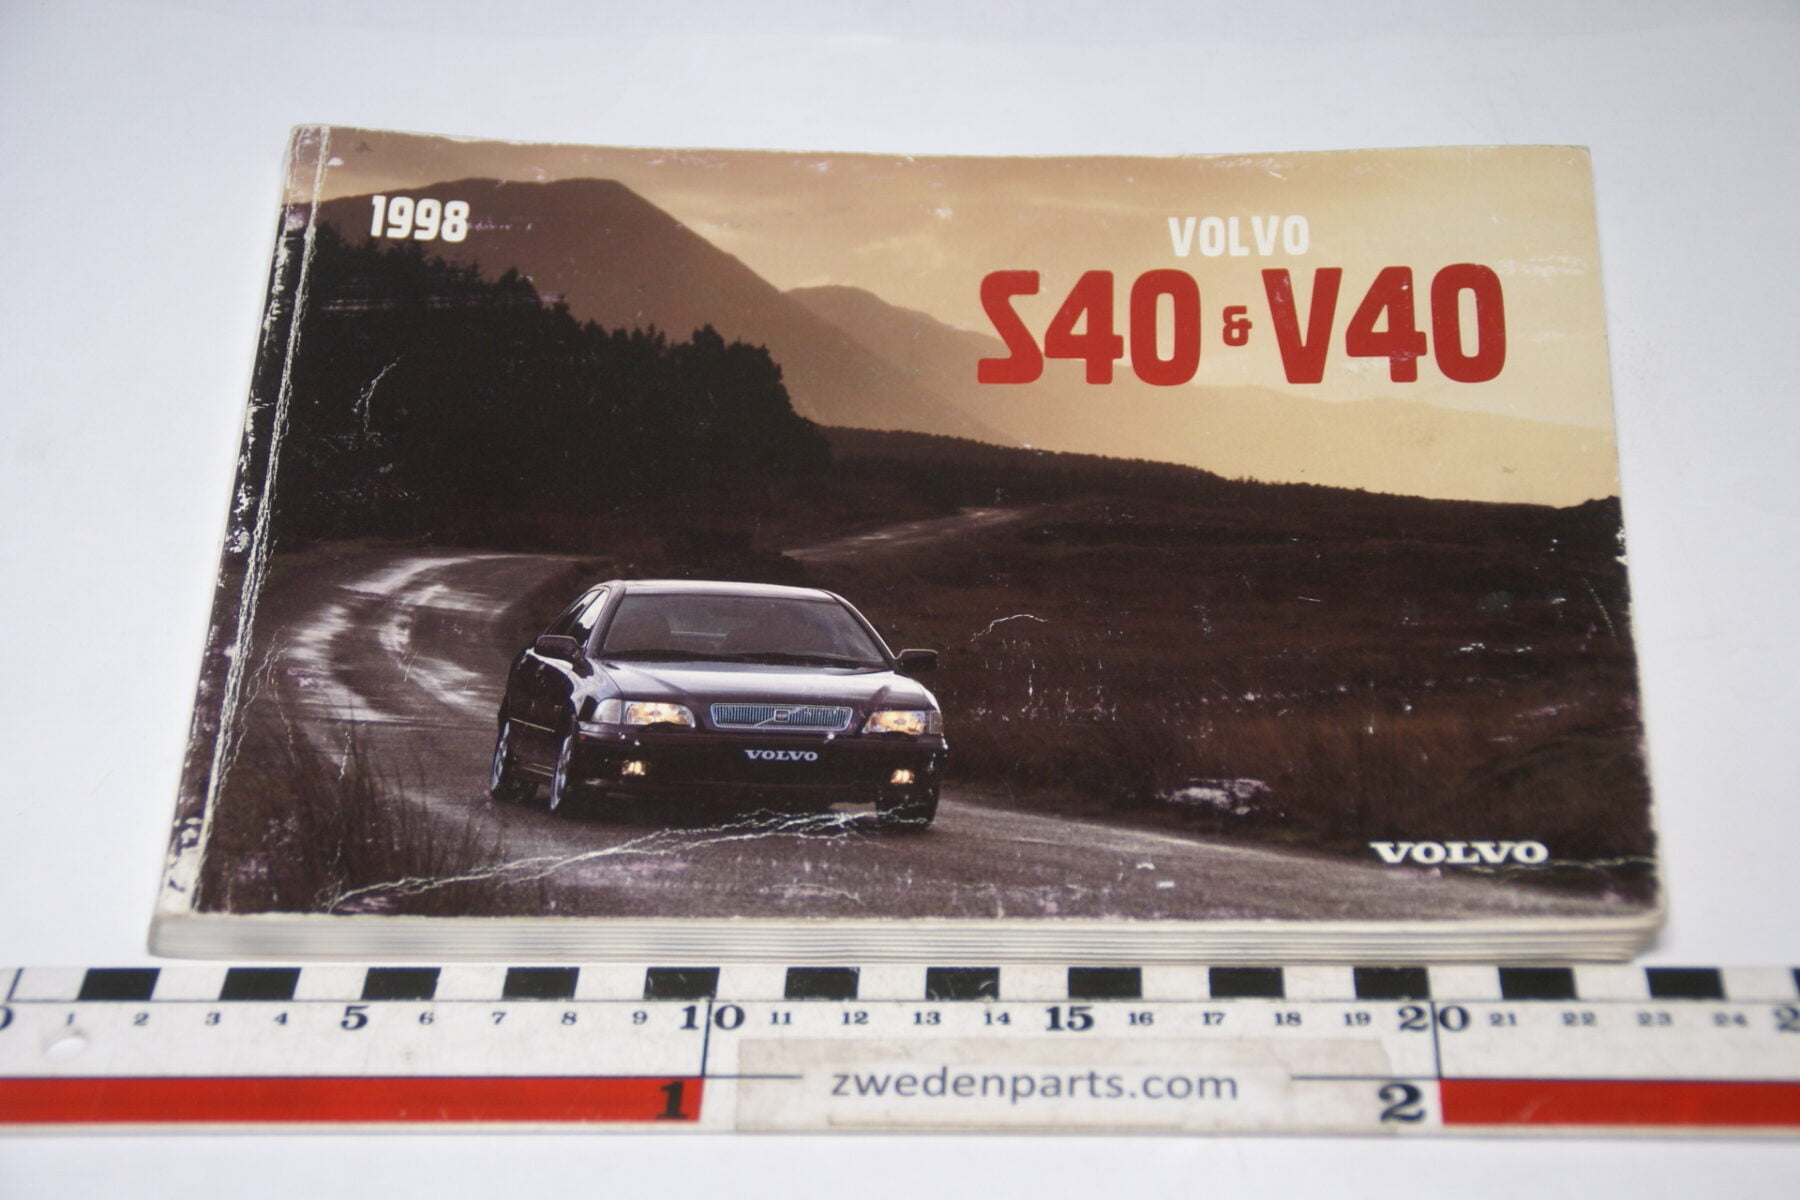 DSC07101 1997 origineel Volvo S40 V40 instruktionsbok TP 4162-1 Svenskt